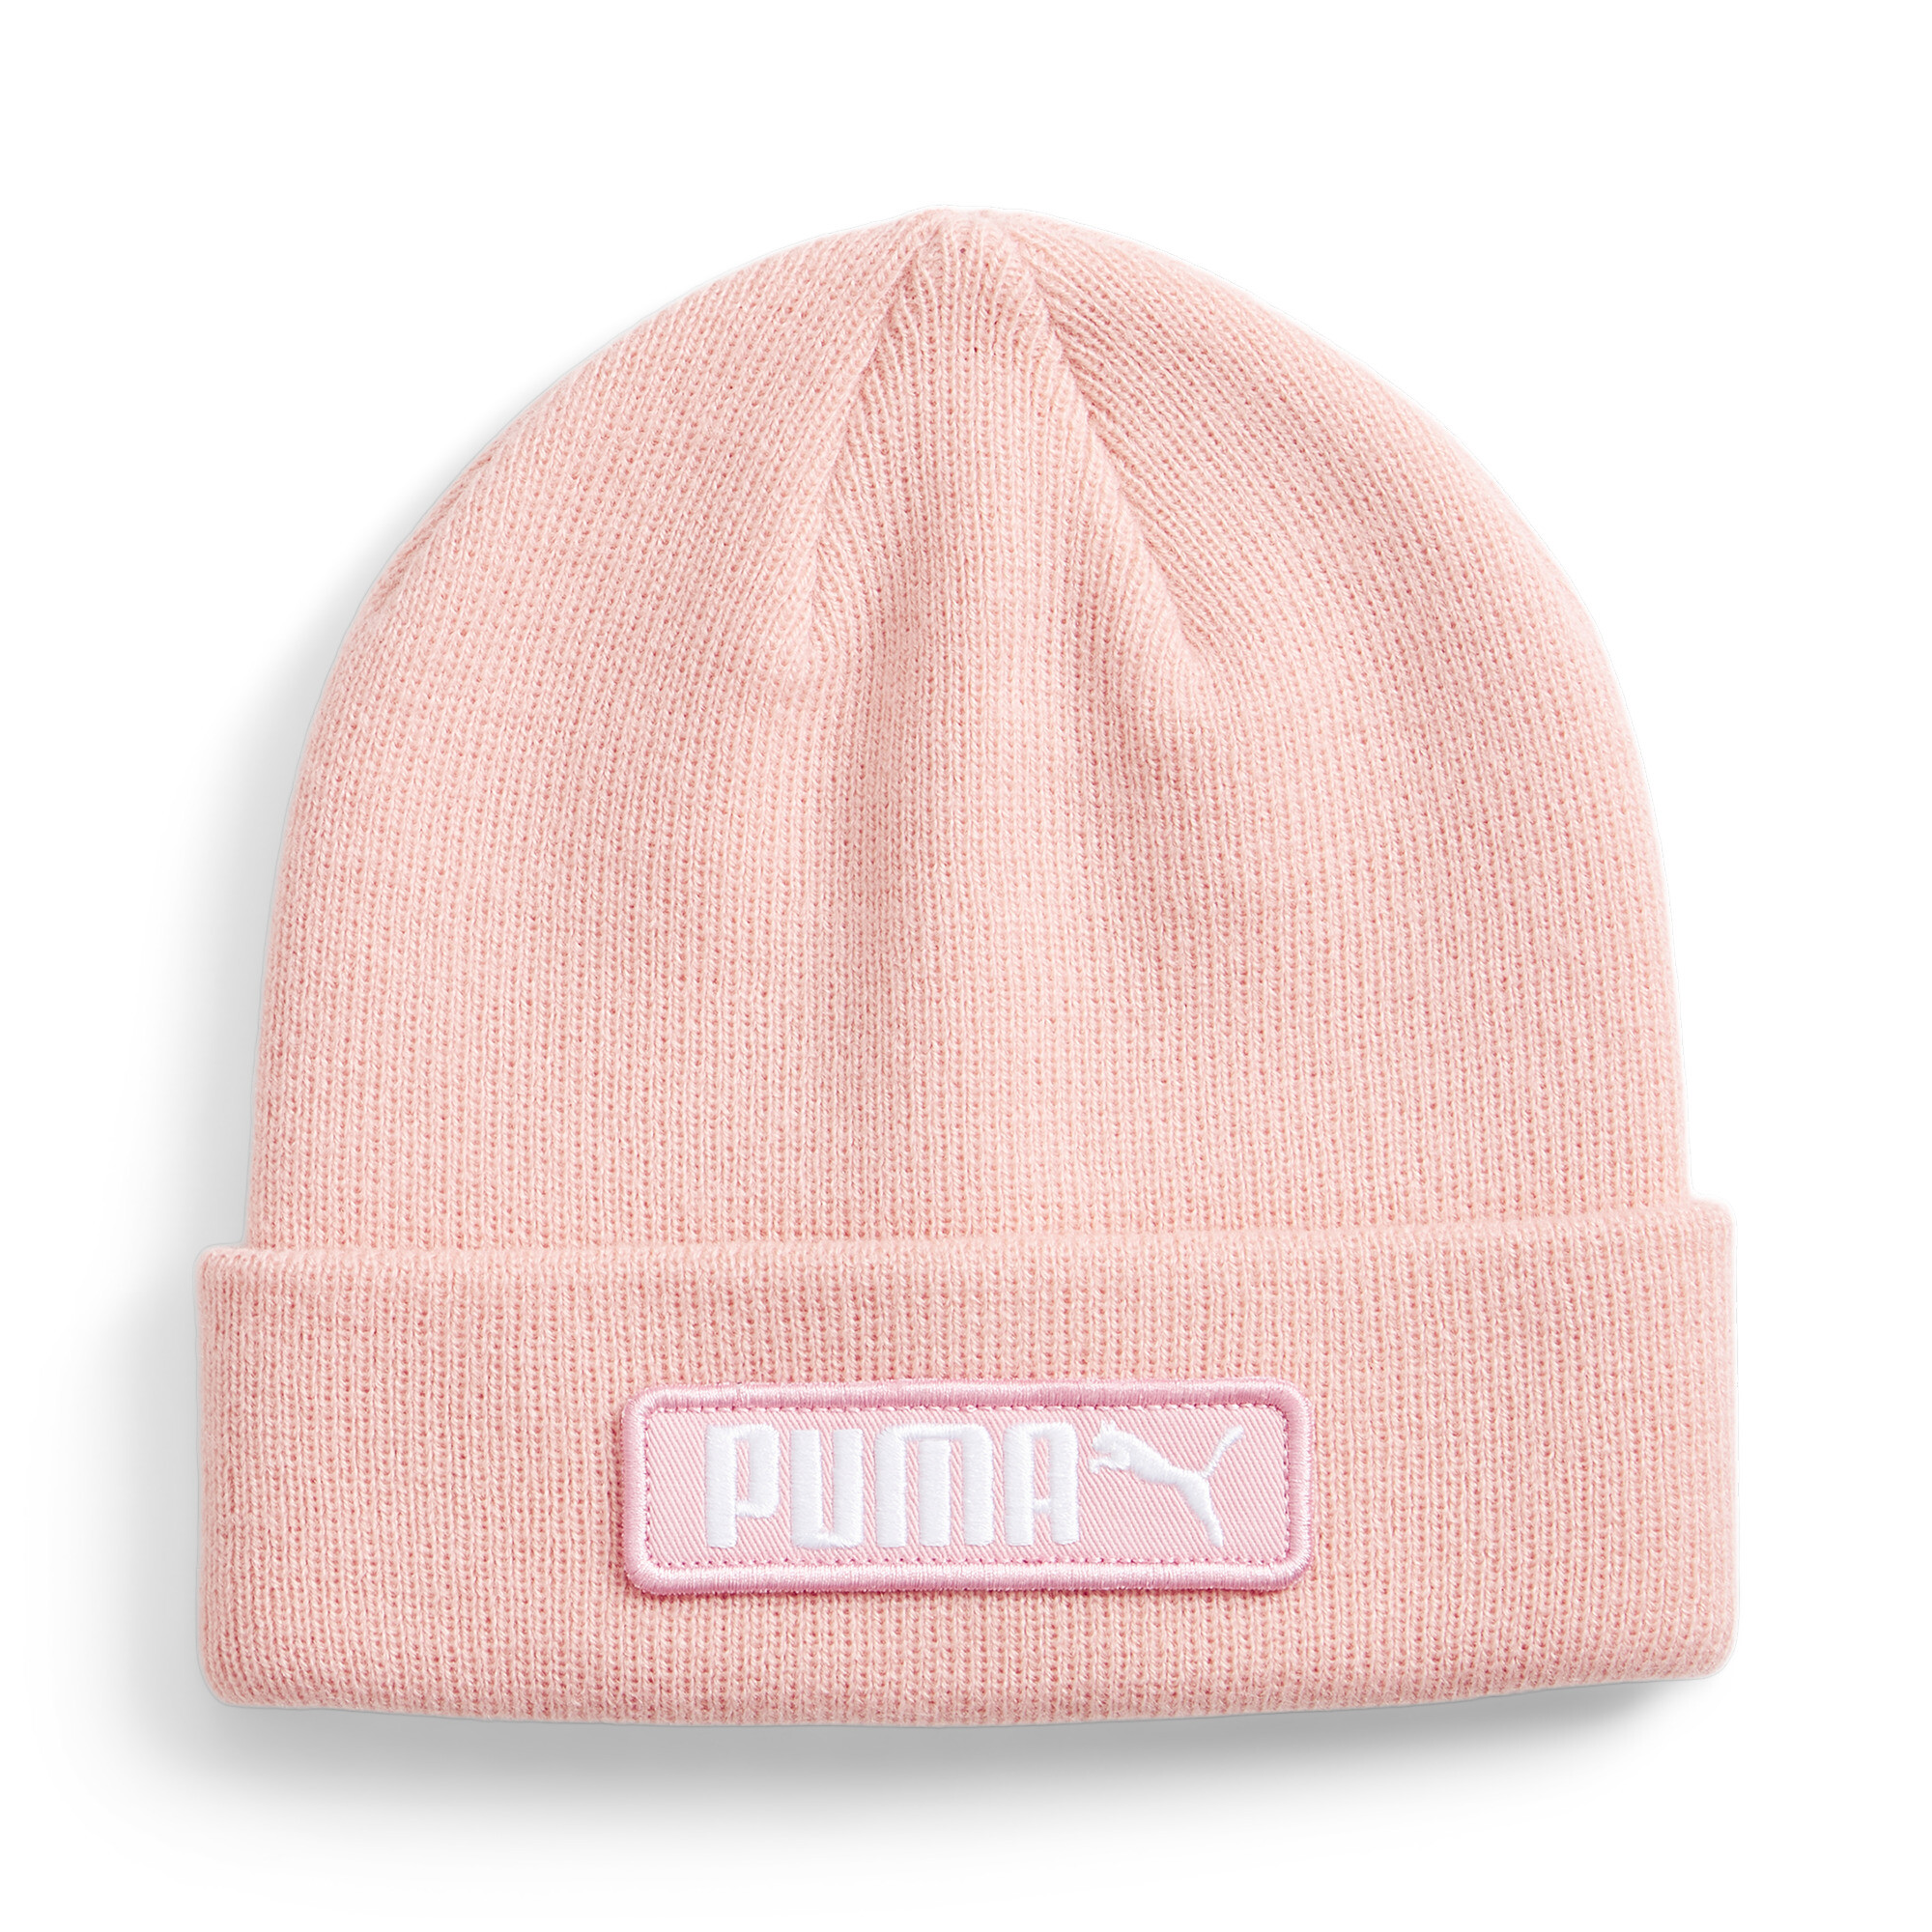 Puma Classic Cuff Youth Beanie Hat, Pink, Accessories